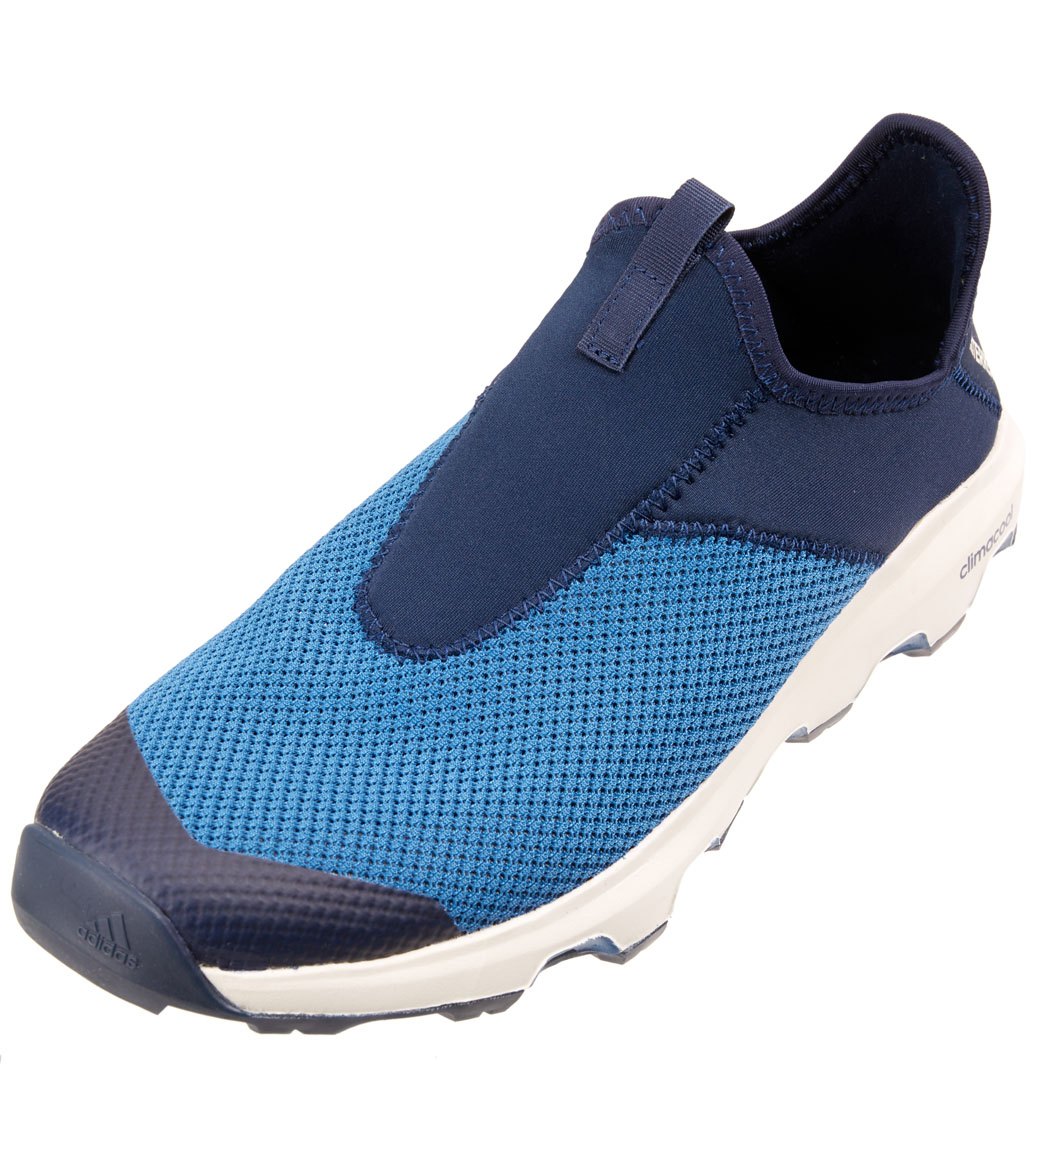 Adidas Men's Terrex Climacool Voyager Shoe at SwimOutlet.com